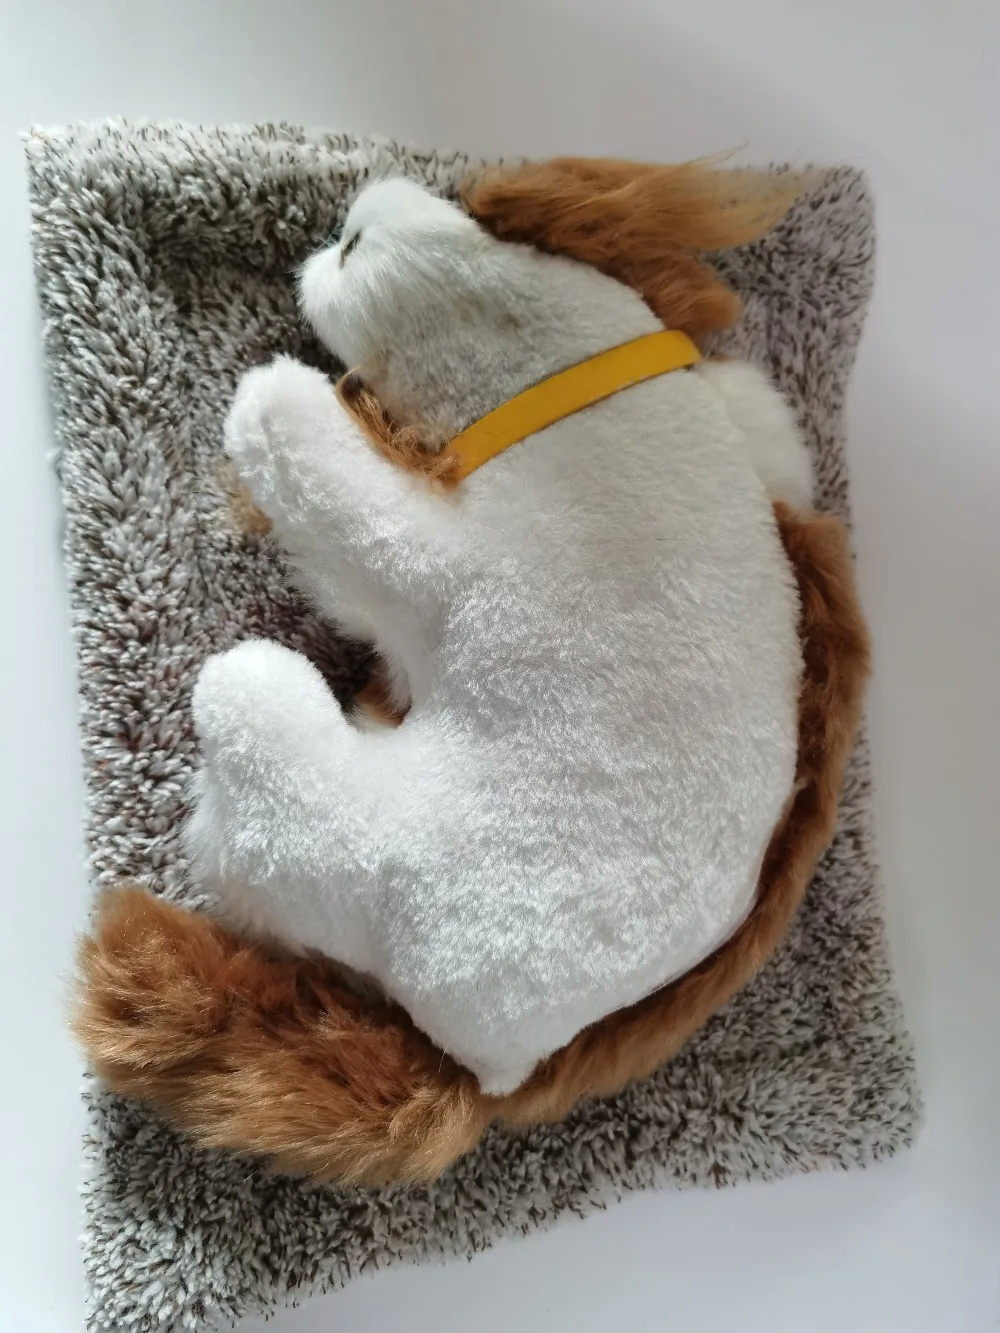 Храп Спящая собака с имитацией плюшевой игрушки украшение автомобиля украшение в помещении адсорб формальдегид очистите воздух